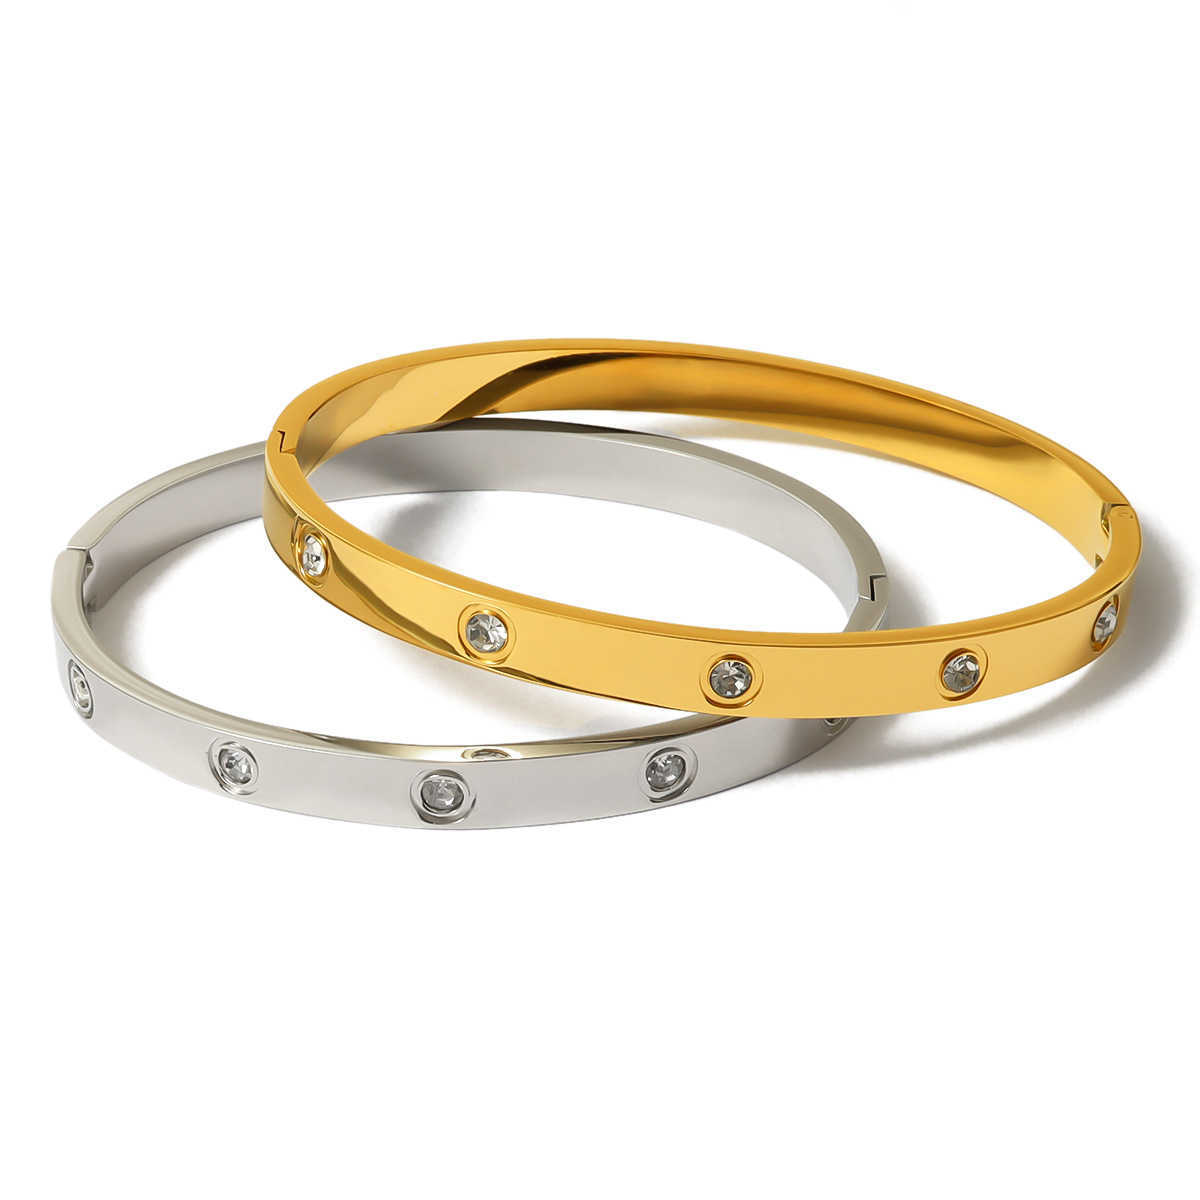 Uso diário de pulseira de alto brilho pulseira com ten pulseiras de diamante para luxo de alta moda com pulseiras originais de Carrtiraa